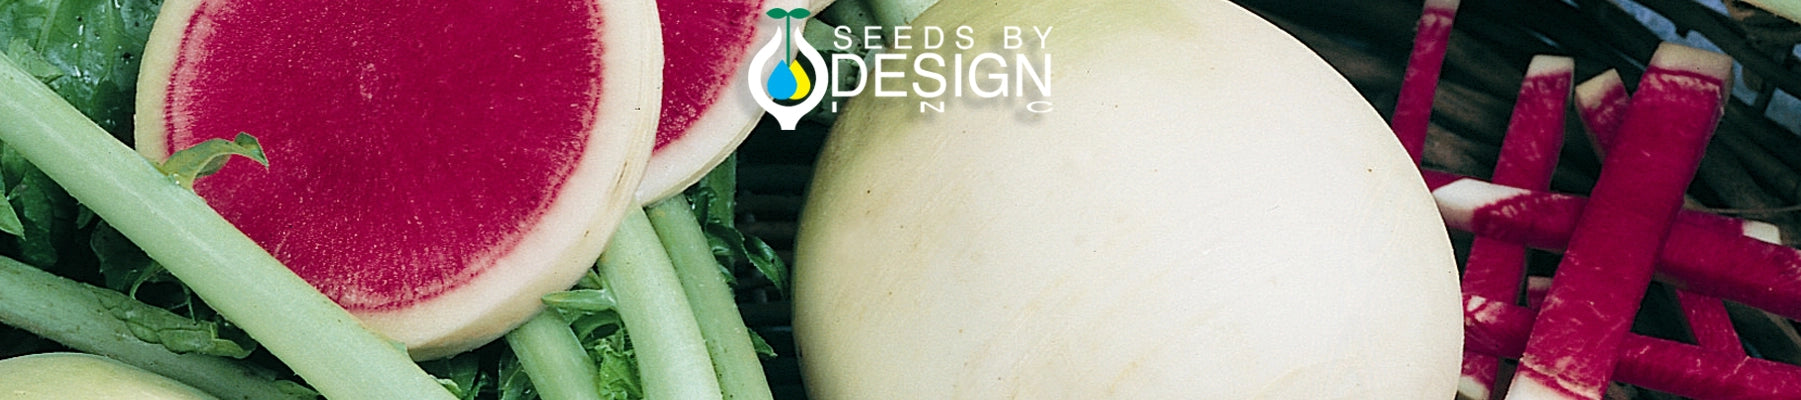 Banner //seedsbydesign.com/cdn/shop/t/28/assets/banner-sxd4-lg.webp?v=59344877546431135951719454113